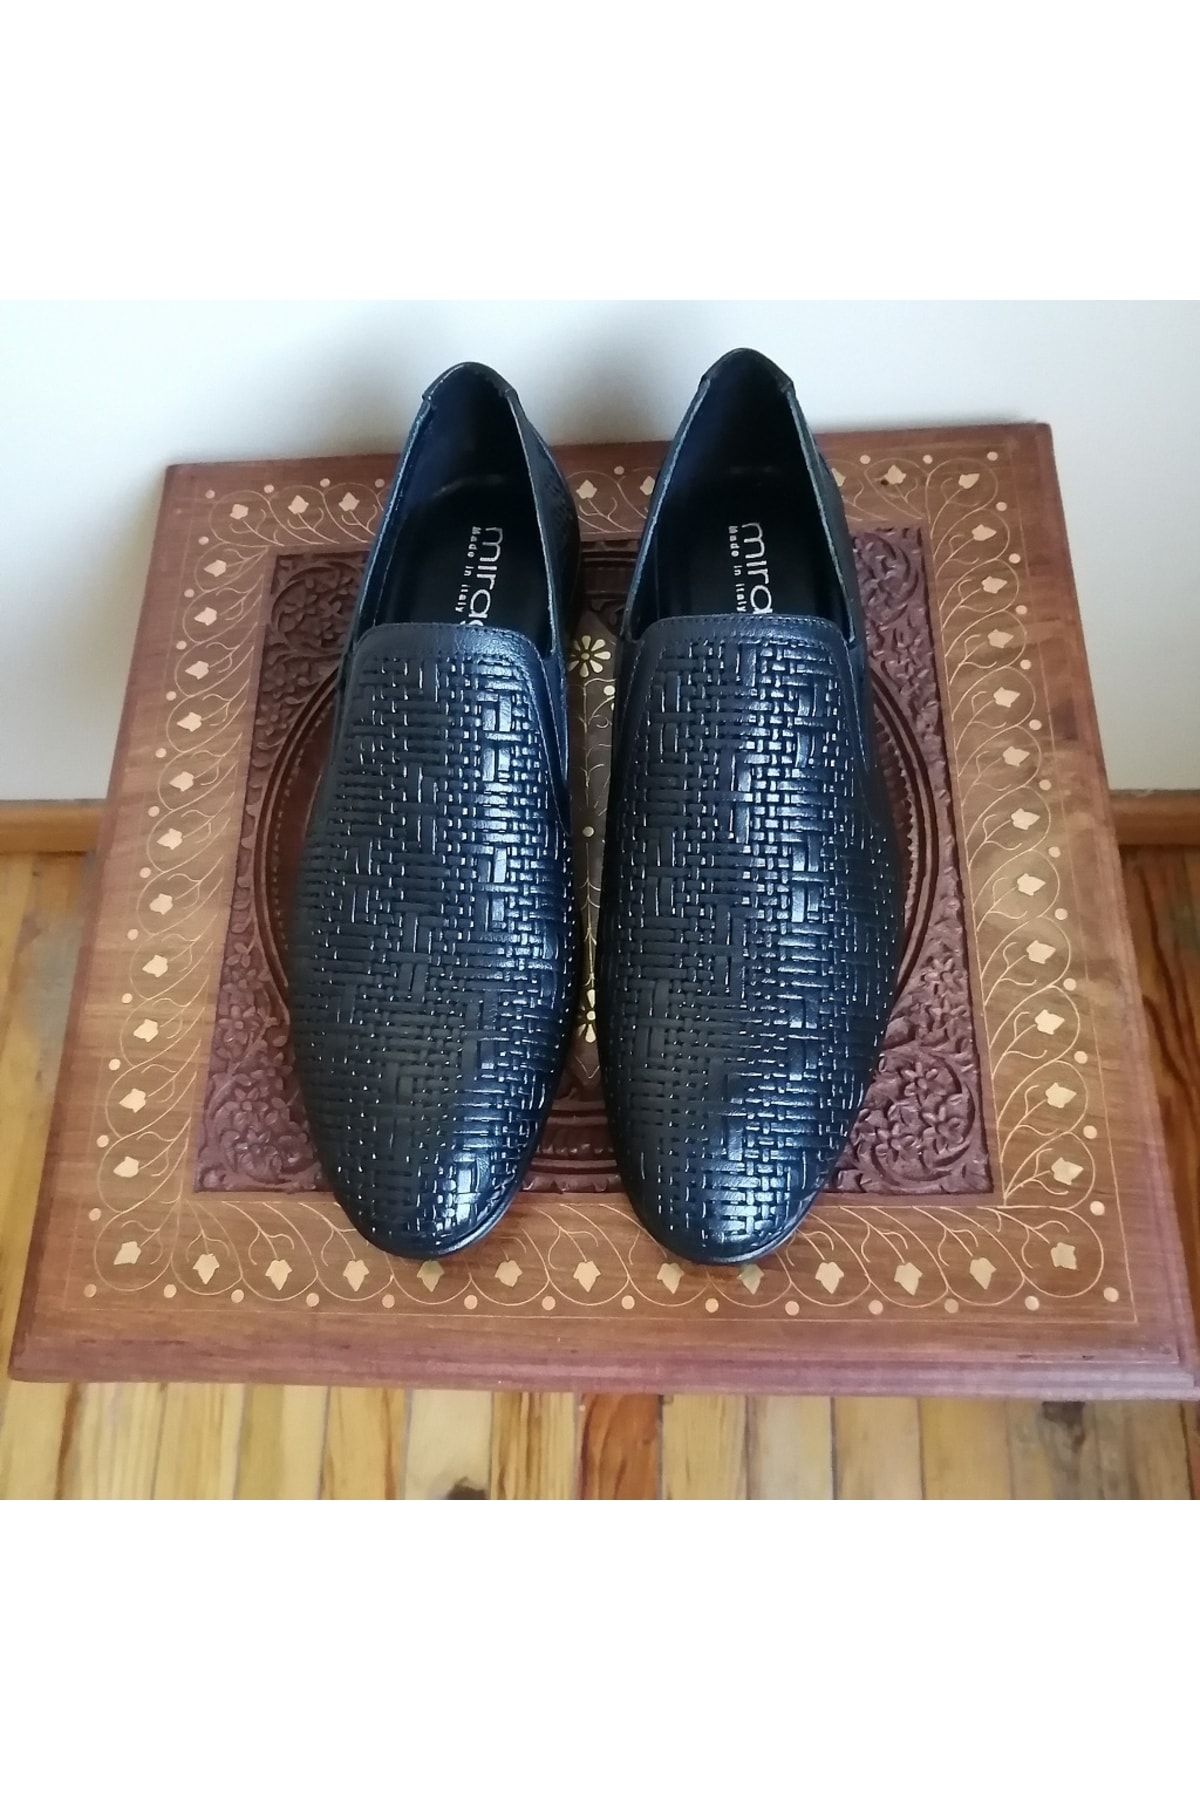 Mirage Uniseks Hakiki Deri Siyah Örgü Baskı Desenli Yumuşak Dikişli Kösele Tabanlı Loafer Ayakkabı